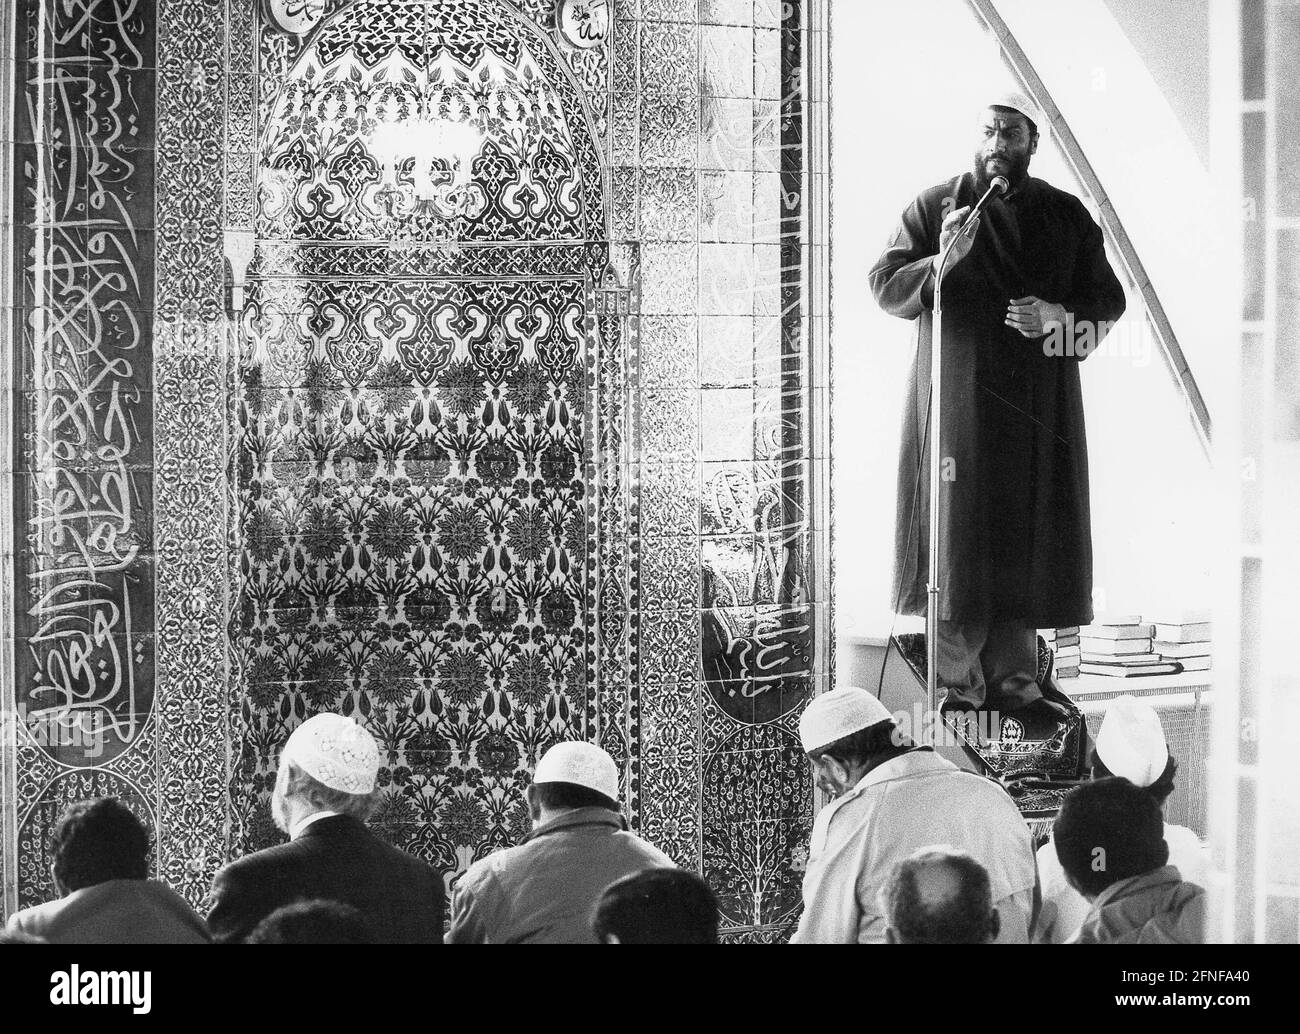 Ahmed Al Khalifa, imam musulman de Munich, donnant un sermon dans une mosquée. [traduction automatique] Banque D'Images